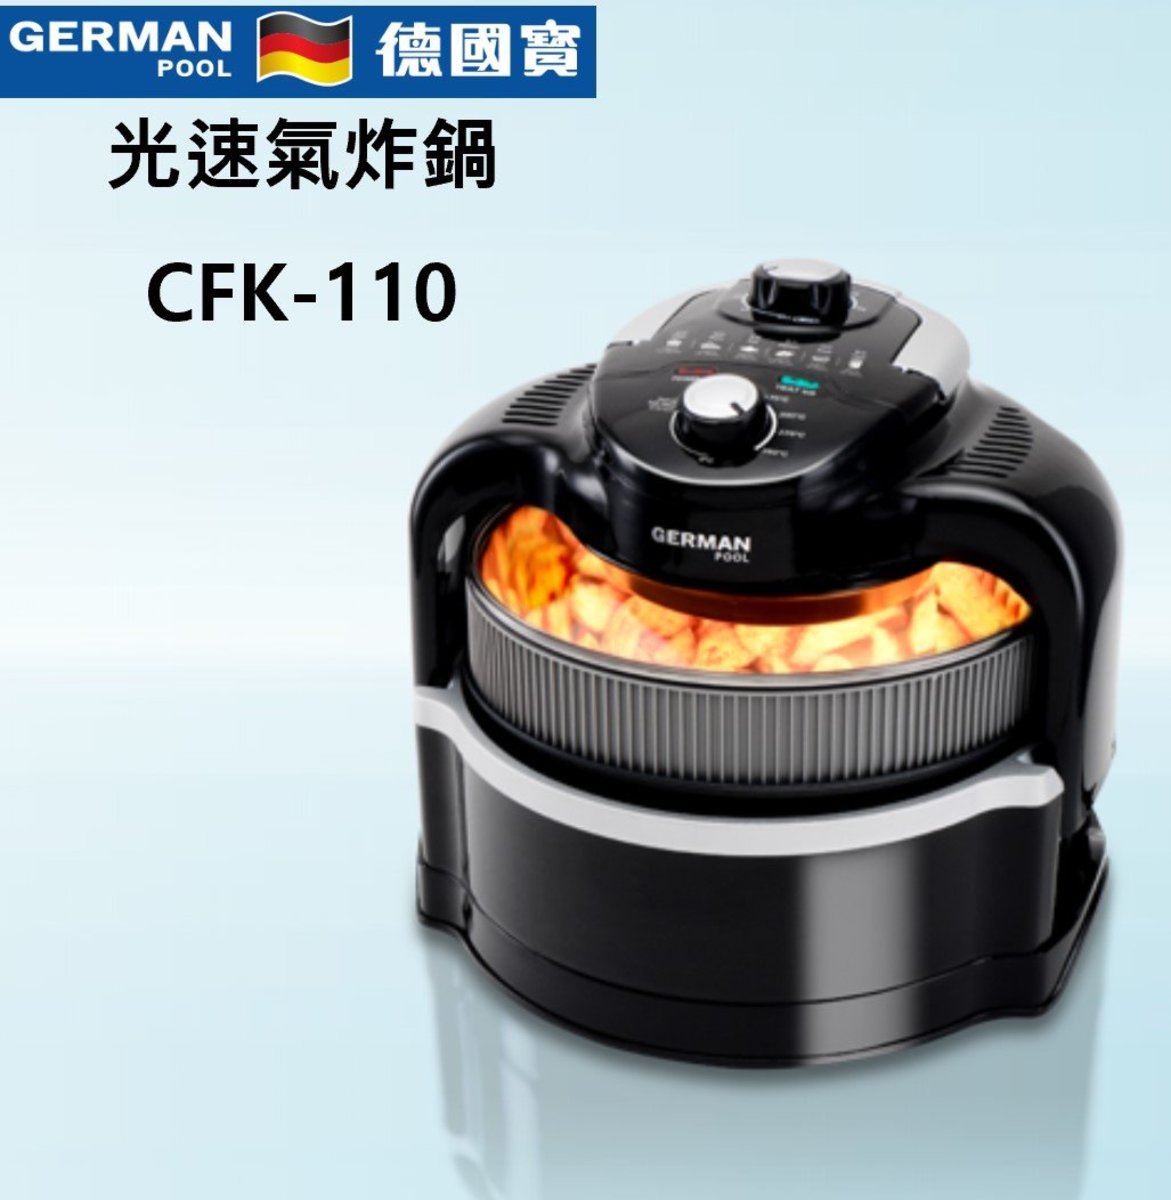 4.5公升 German Pool CKF-110 光速氣炸鍋 先進空氣循環技術 德國寶 香港行貨